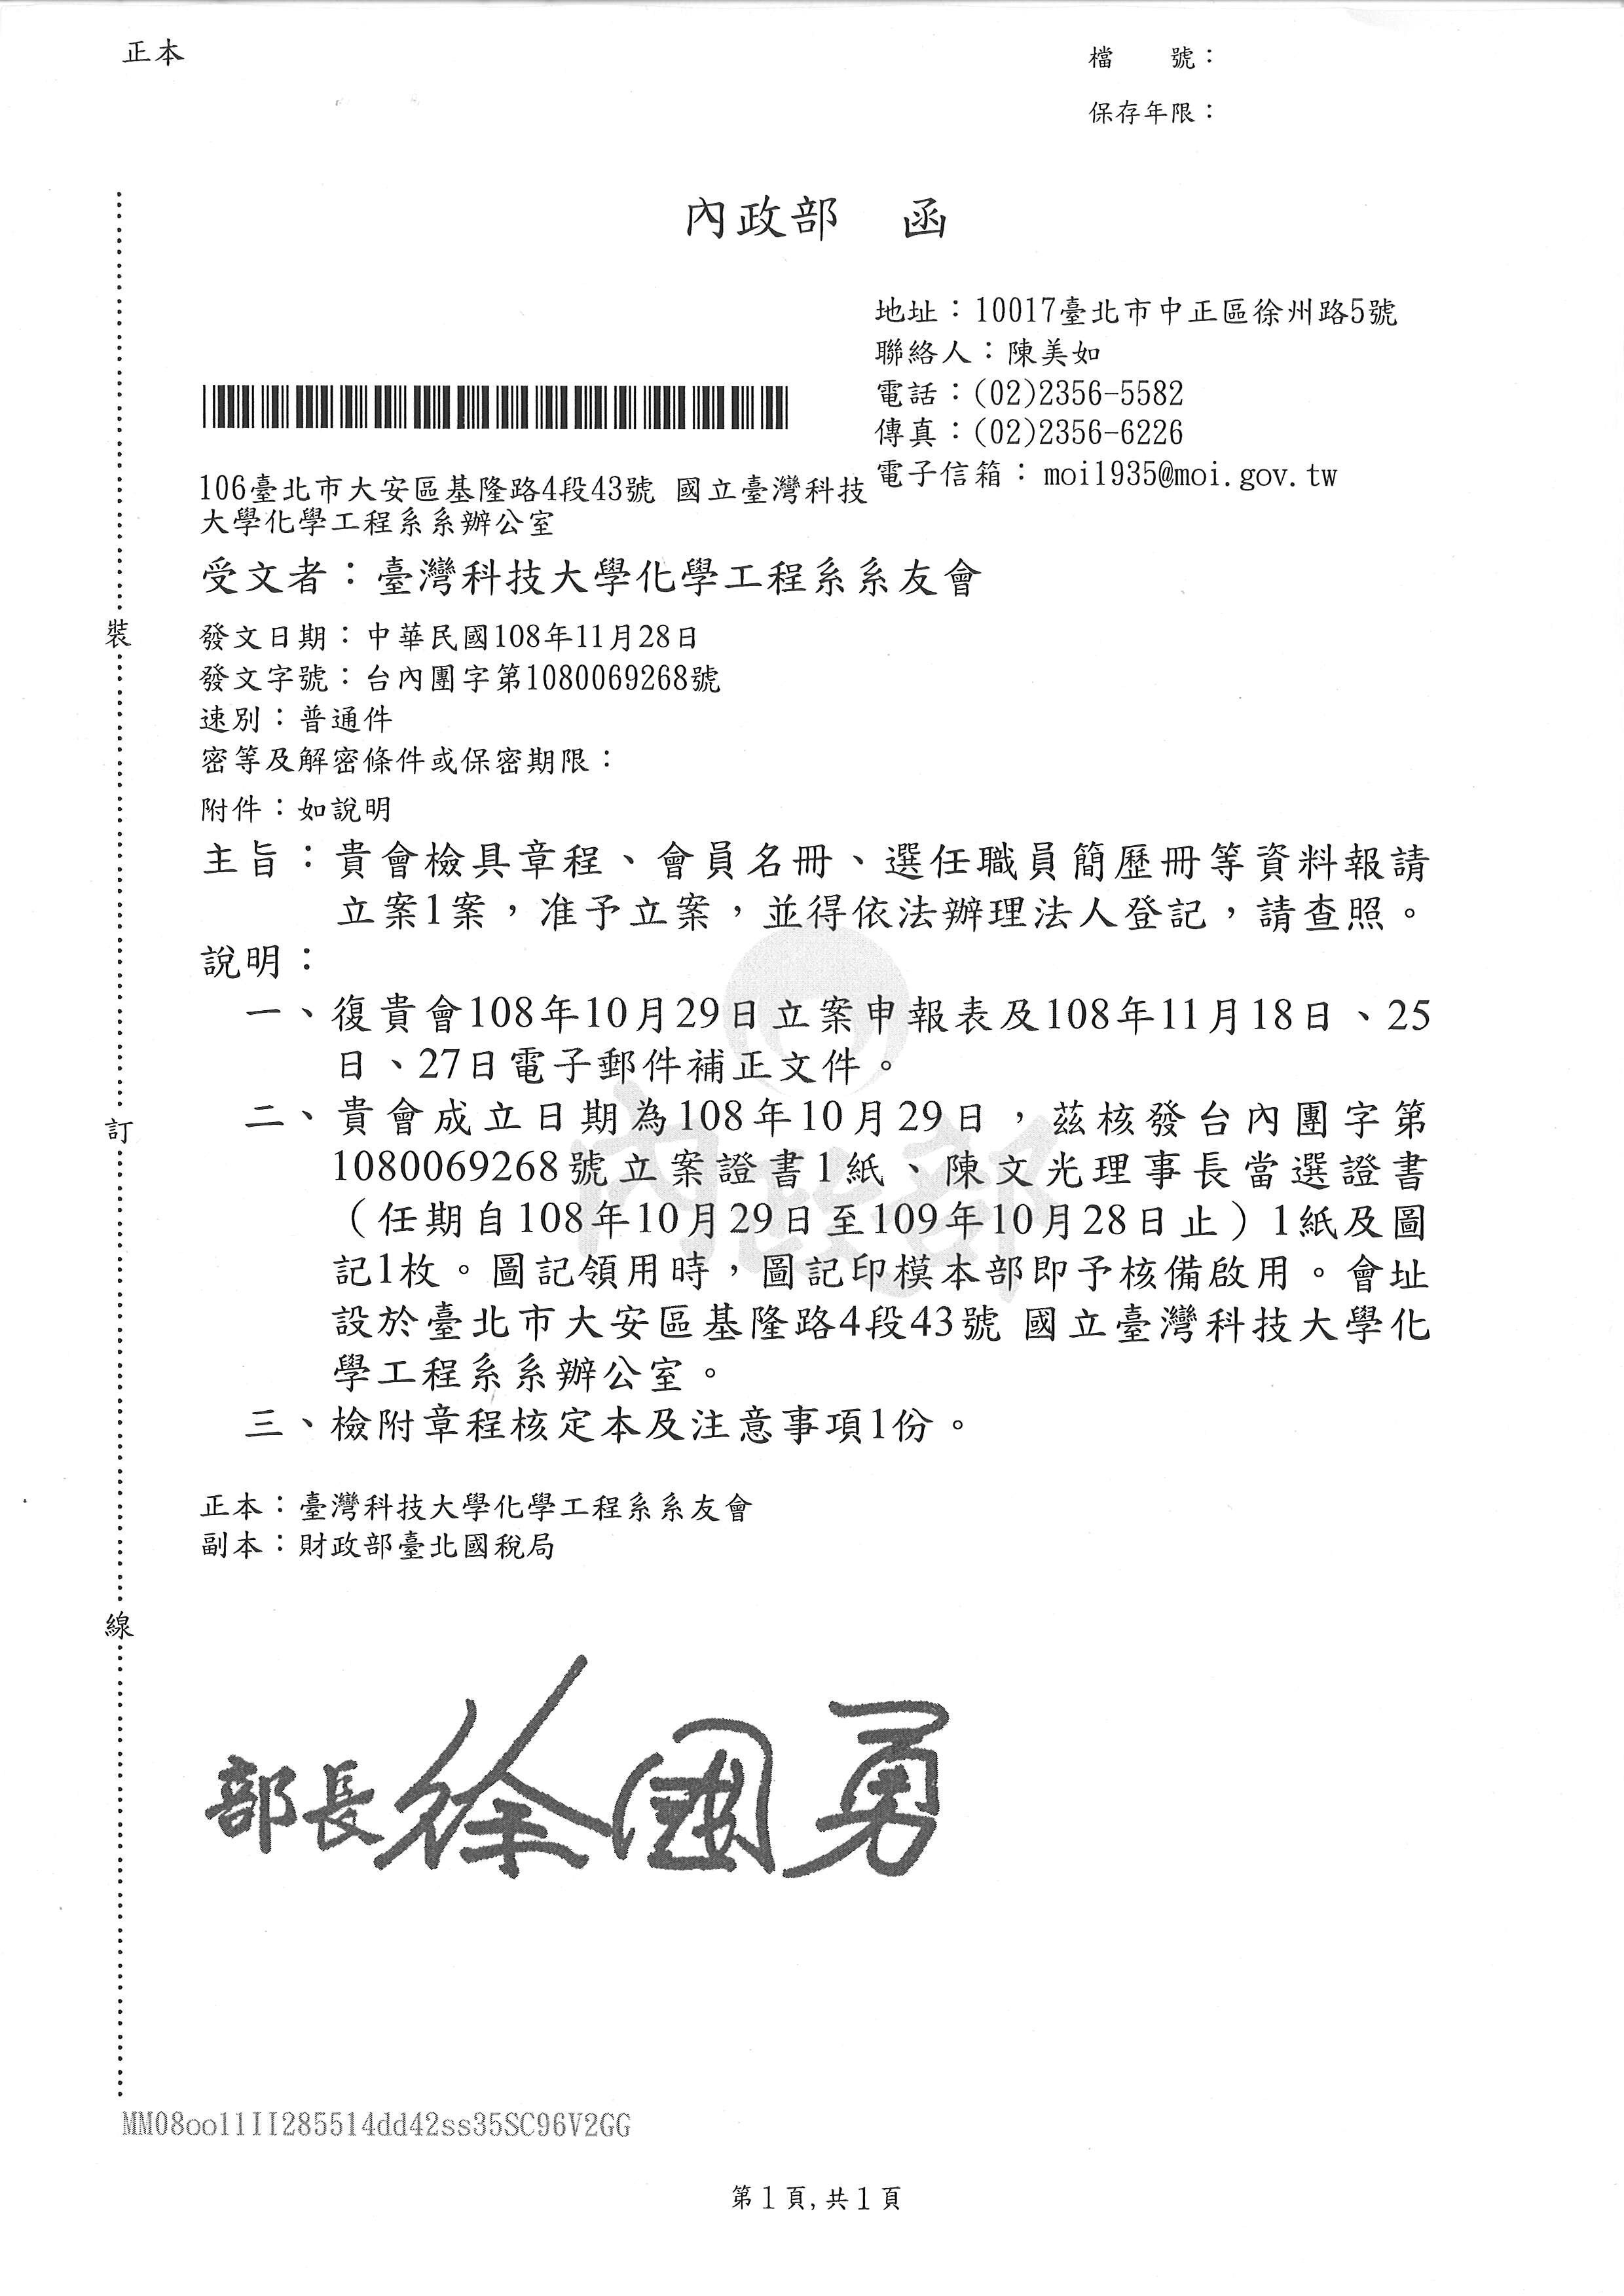 台灣科技大學化學工程系系友會108.10.29內政部核准成立